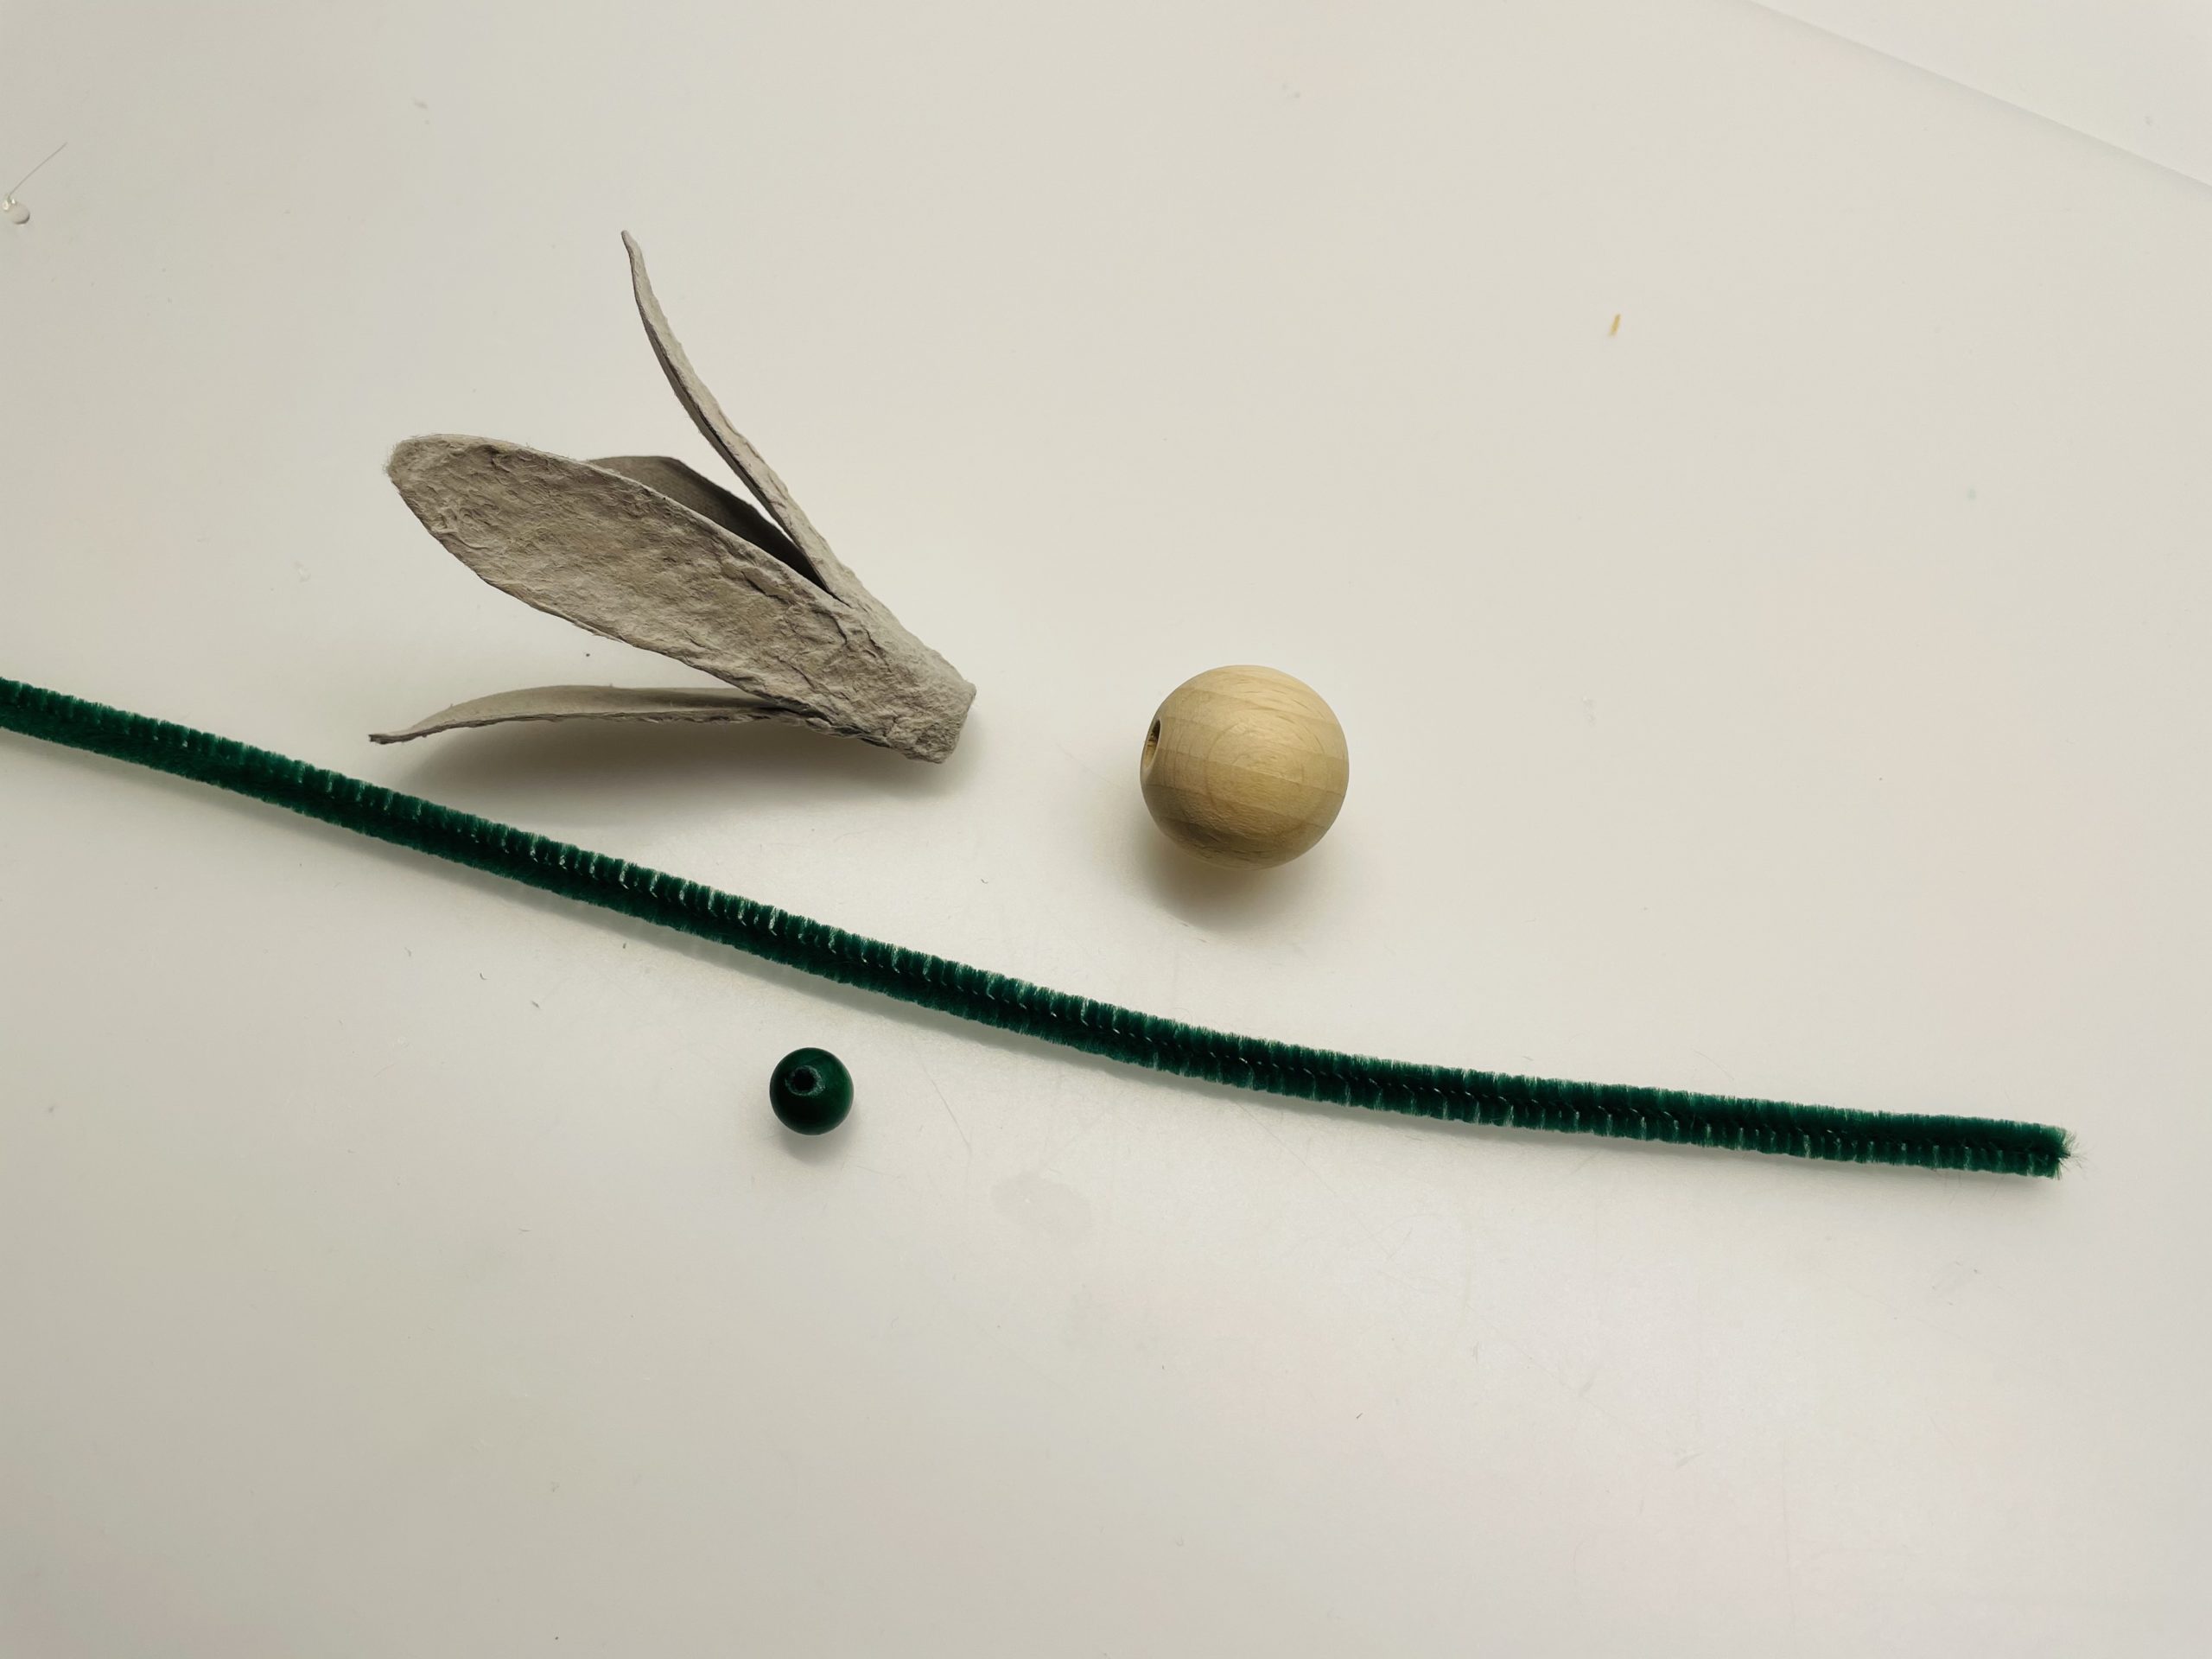 Bild zum Schritt 5 für das Bastel- und DIY-Abenteuer für Kinder: 'Jetzt benötigt ihr den Pfeifenputzer und die Perlen.'